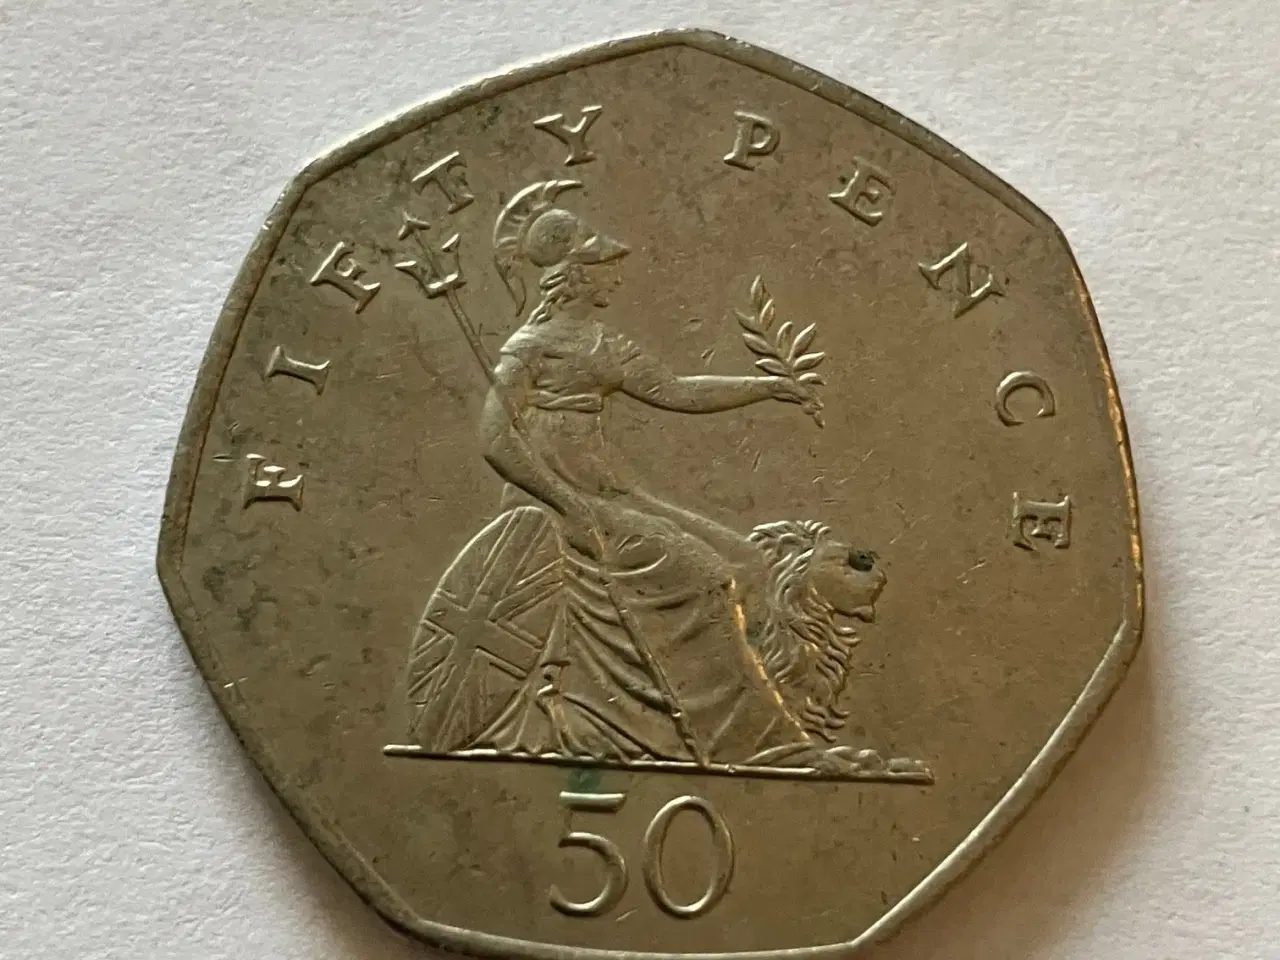 Billede 2 - 50 Pence England 2001